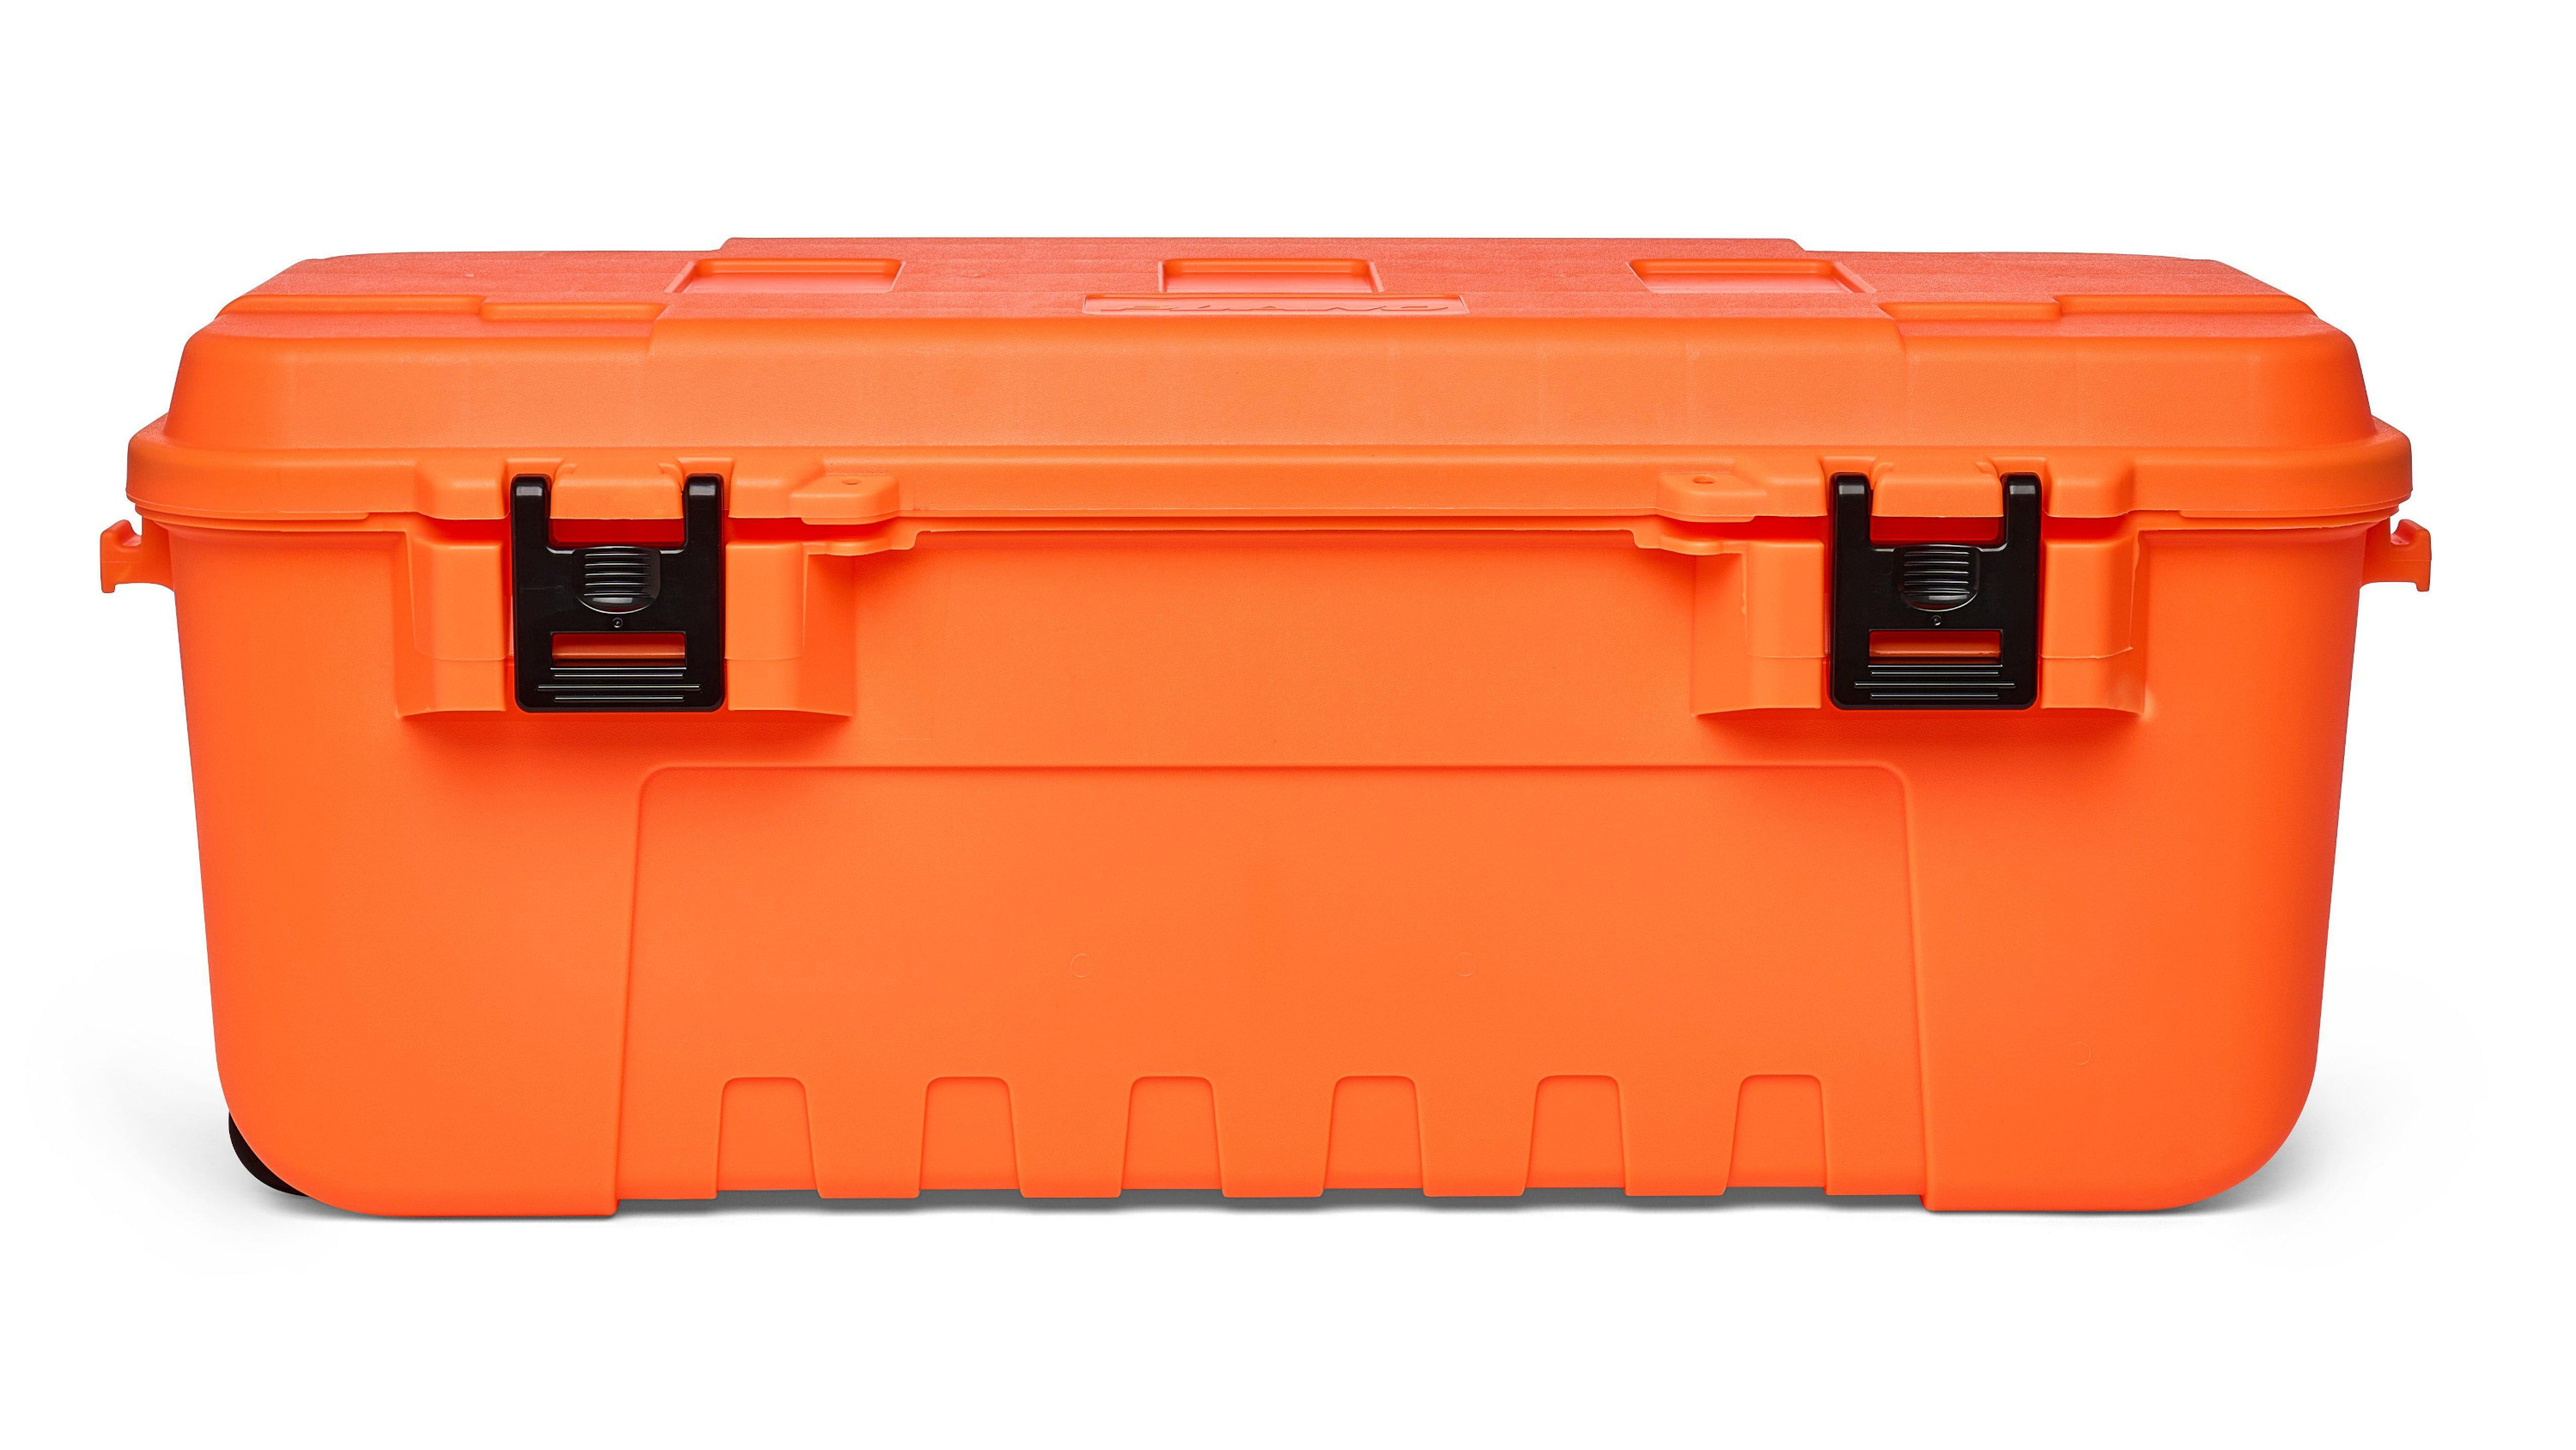 Plano Sportman's Trunk Large Caja de Pesca - Blaze Orange